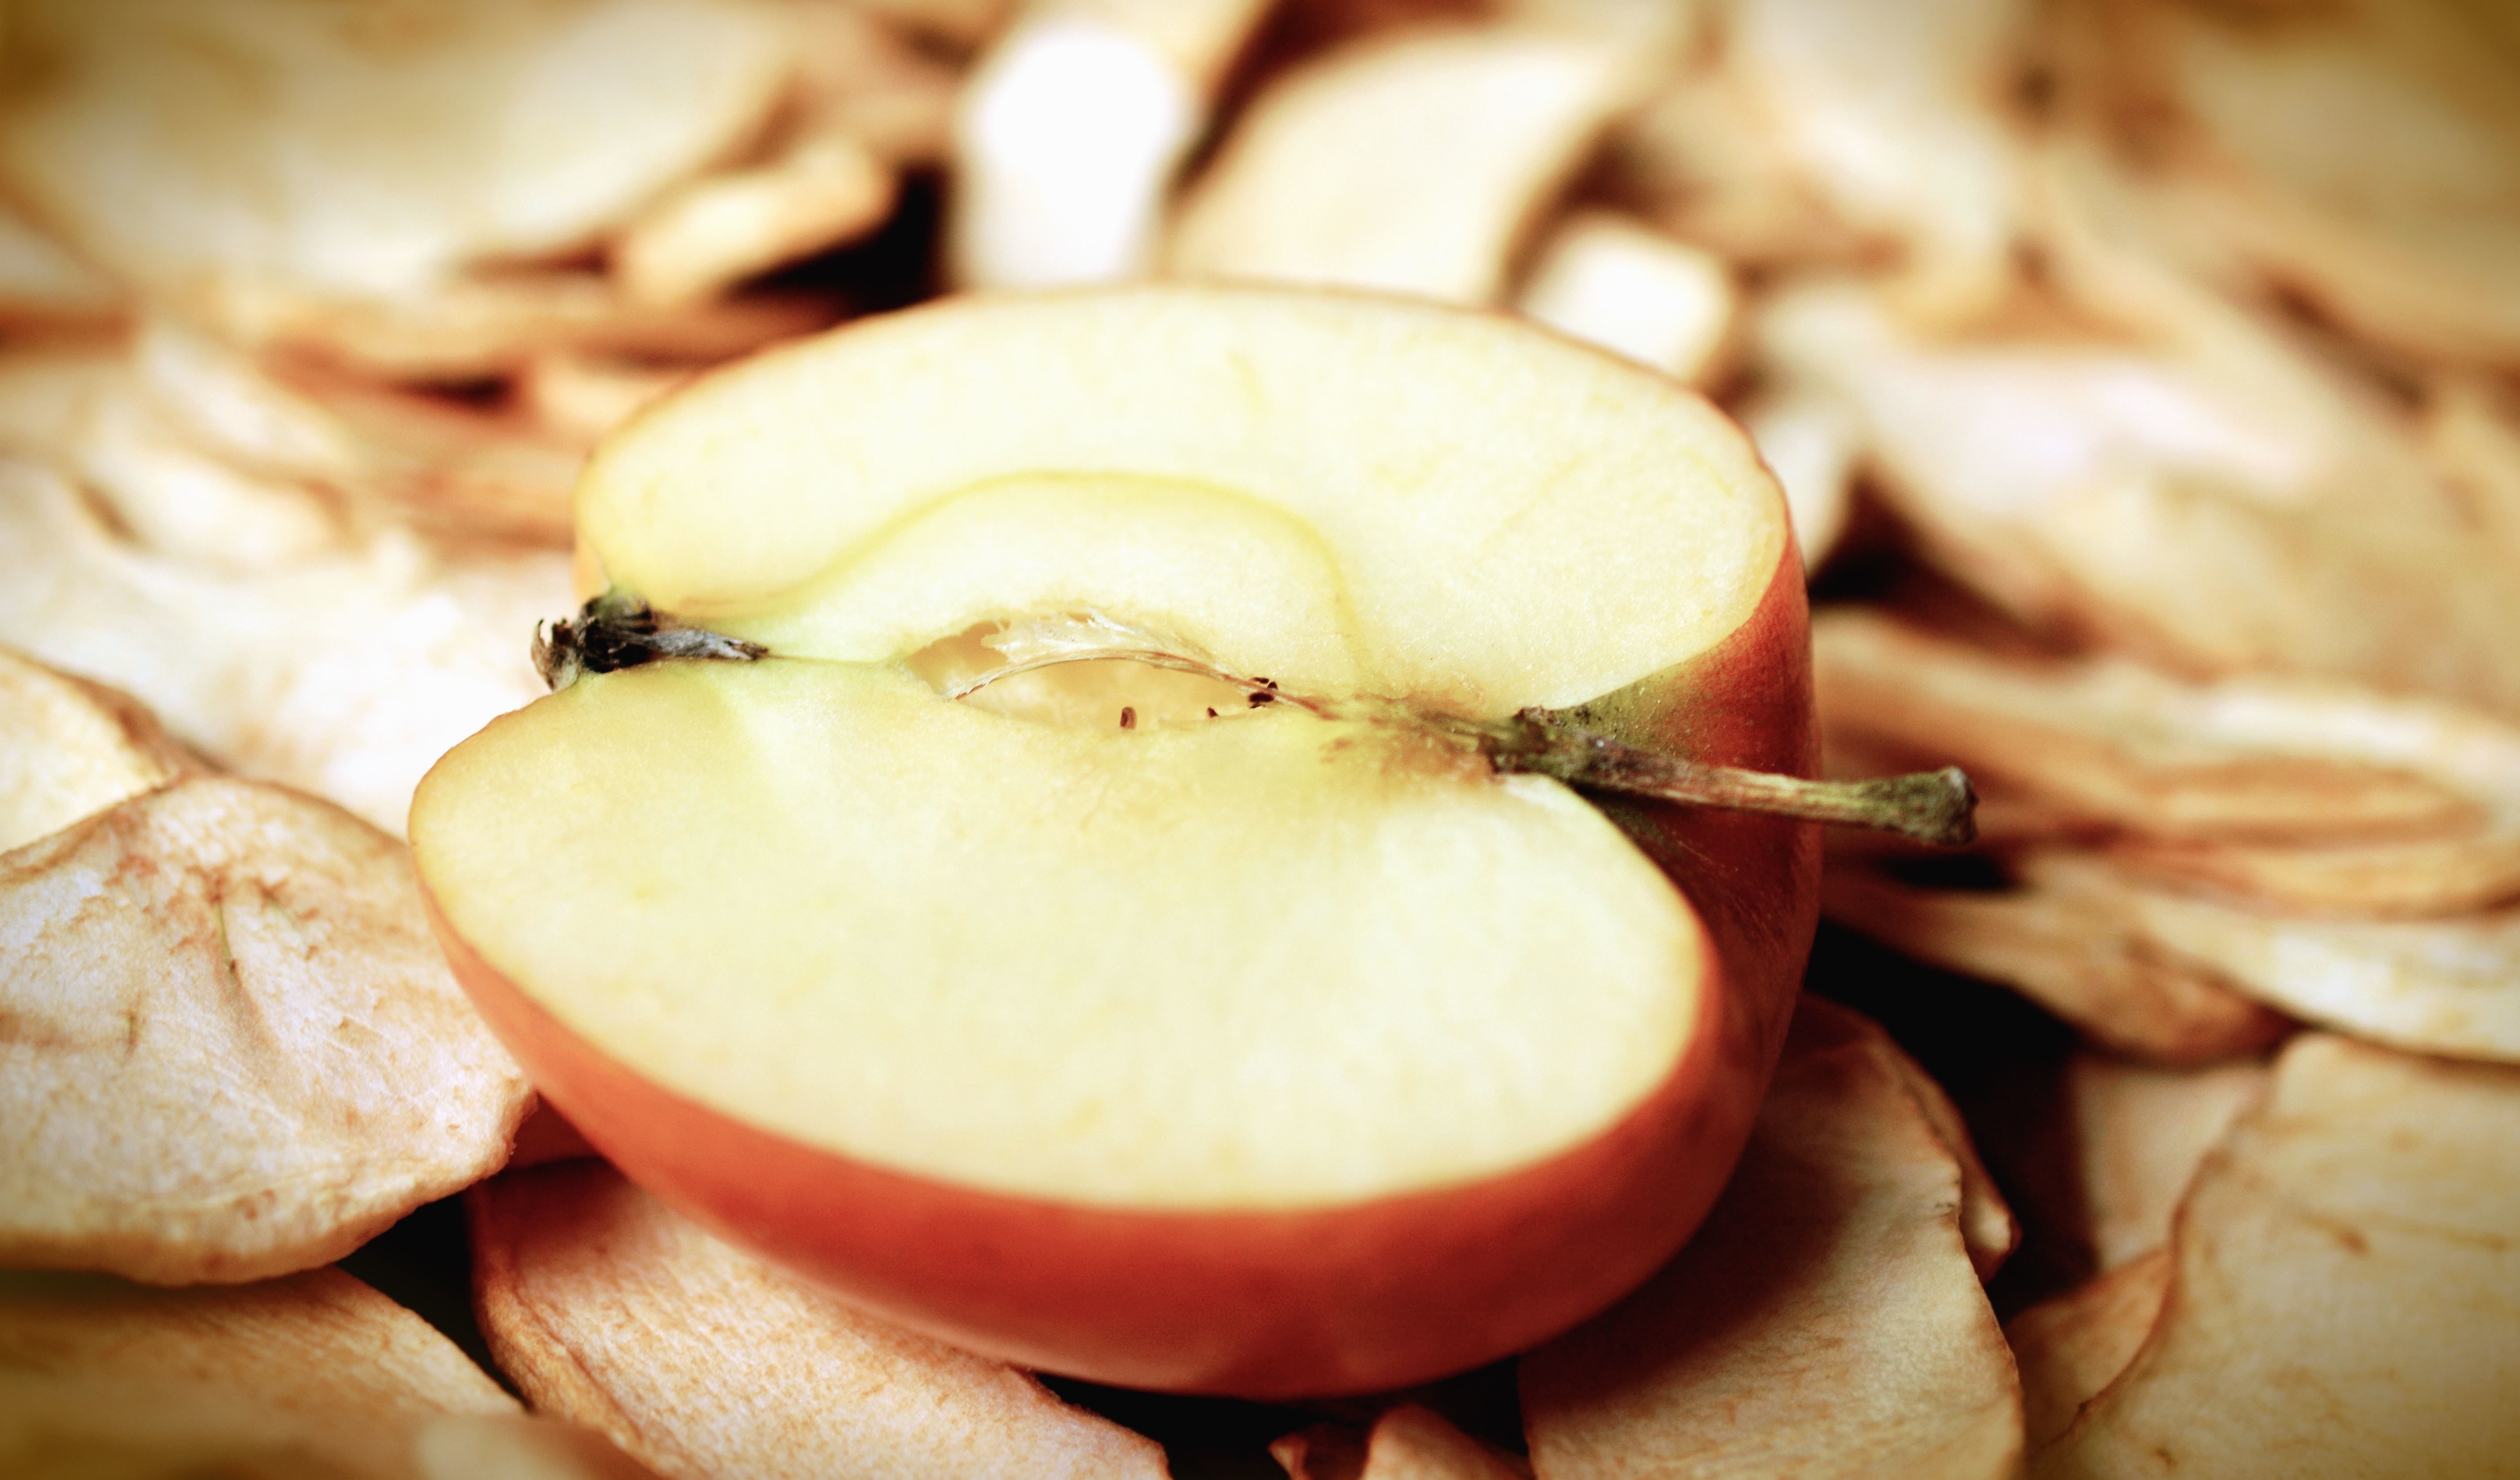 Или кусочек яблока или орешек. Нарезанные яблоки. Яблоко сушёное. Сушеные нарезанные яблоки. Яблоко ломтиками сушеные.